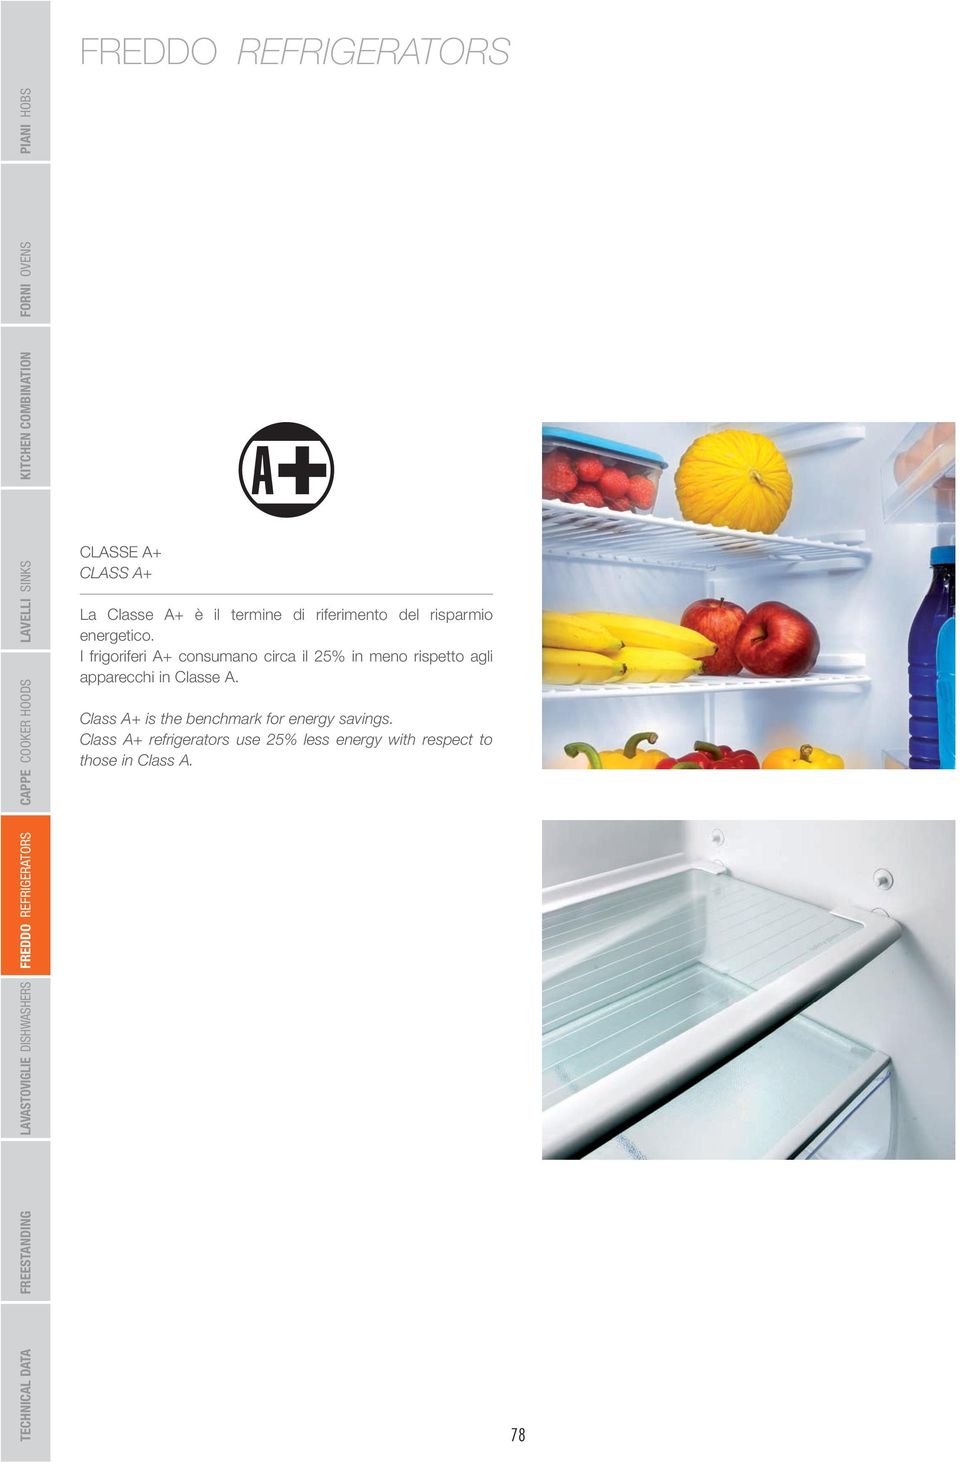 I frigoriferi A+ consumano circa il 25% in meno rispetto agli apparecchi